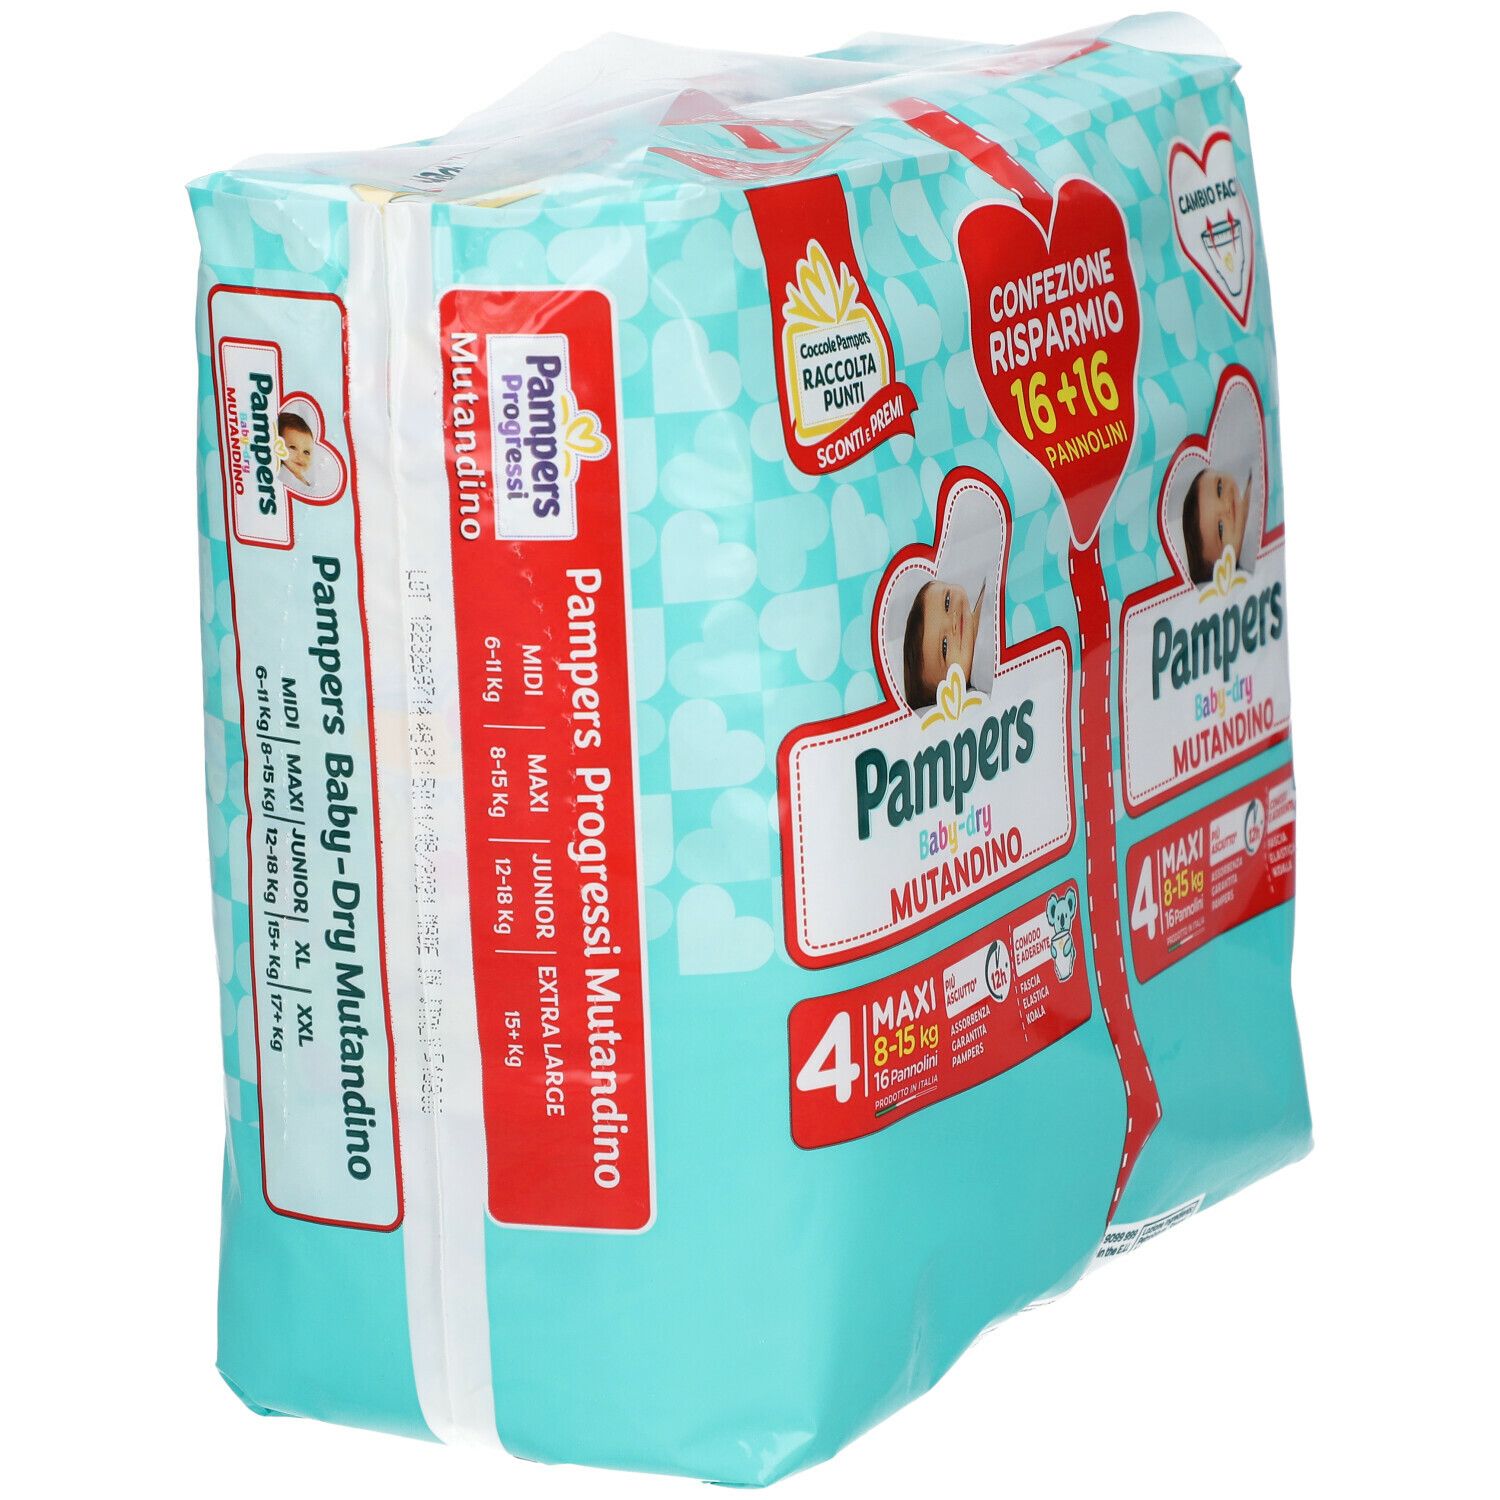 Pampers Baby-dry Mutandino 4 (8-15 Kg)